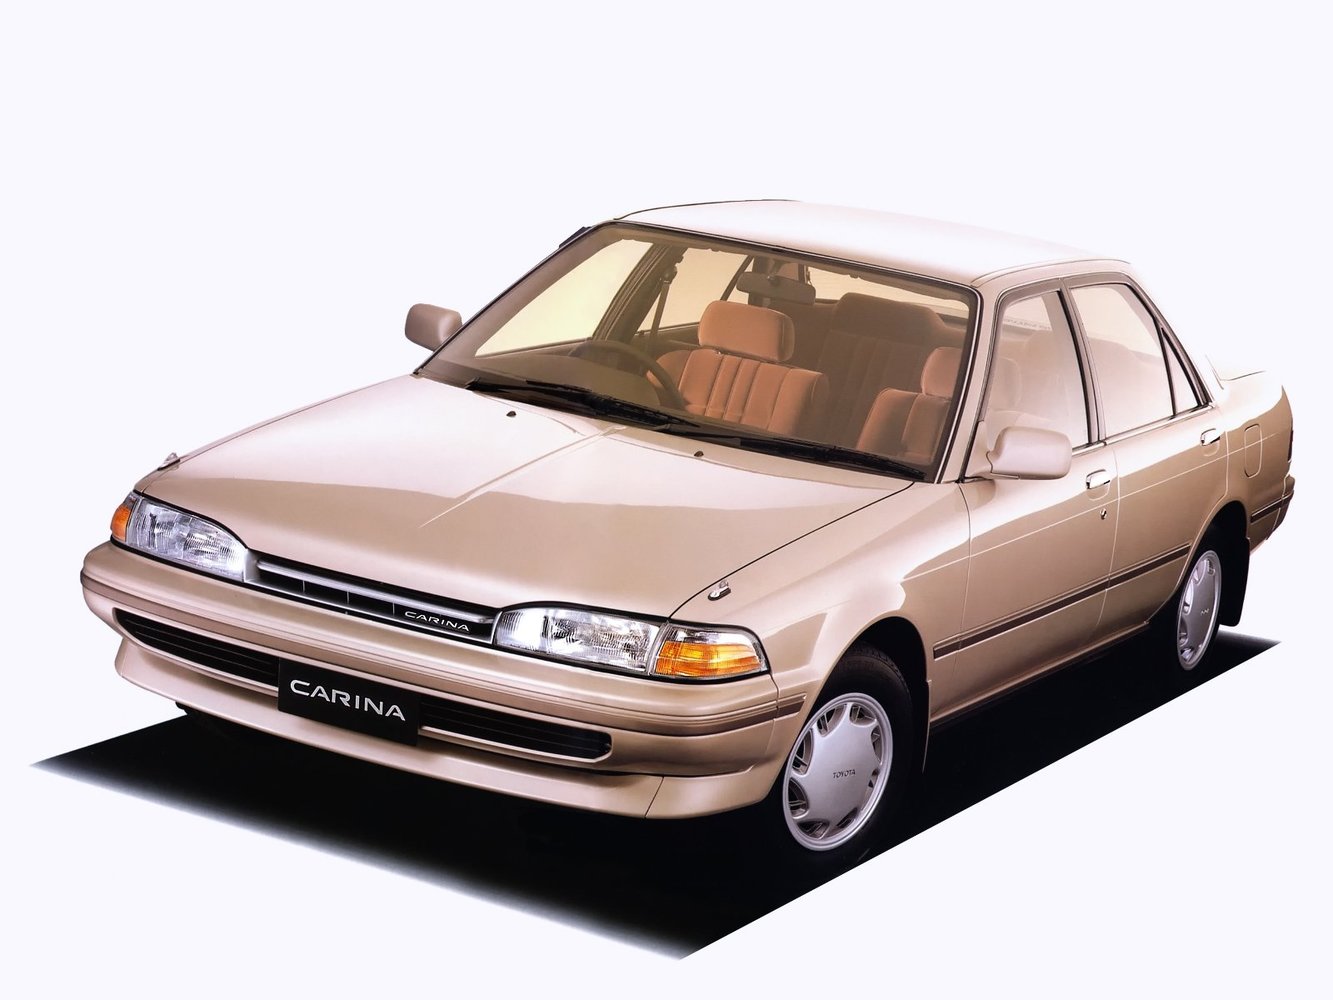 хэтчбек 5 дв. Toyota Carina 1988 - 1992г выпуска модификация 1.6 MT (102 л.с.)